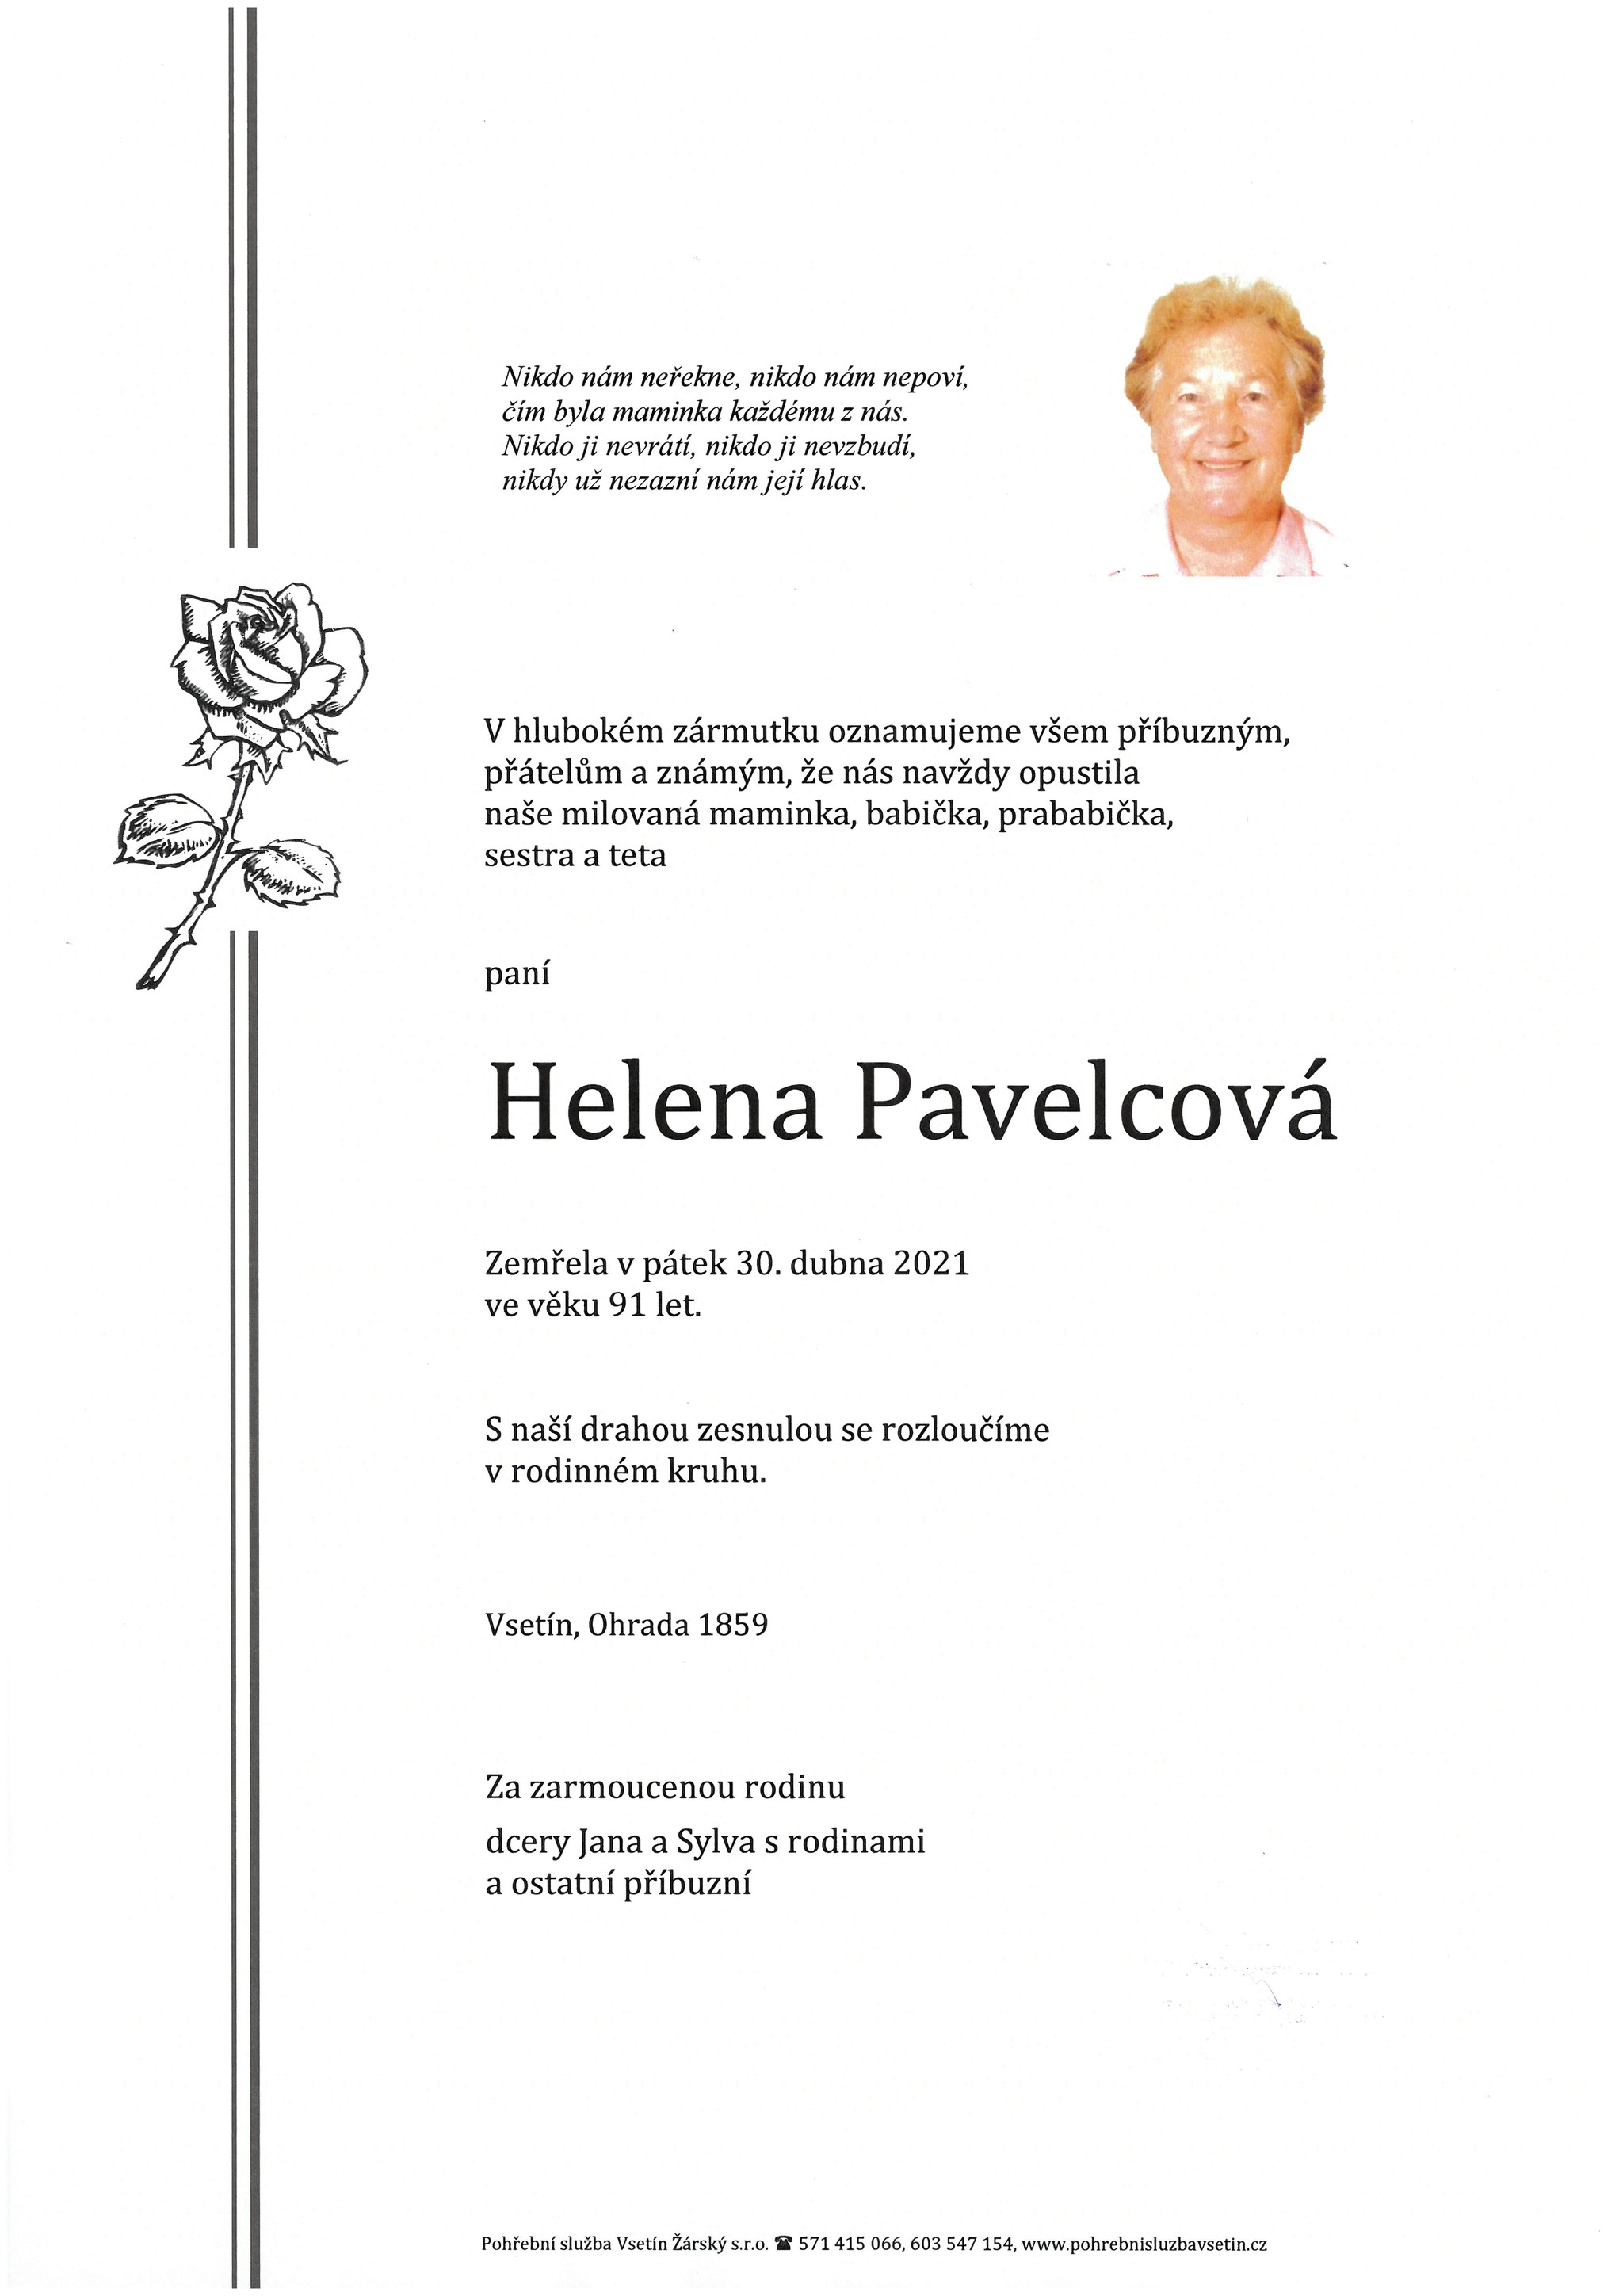 Helena Pavelcová